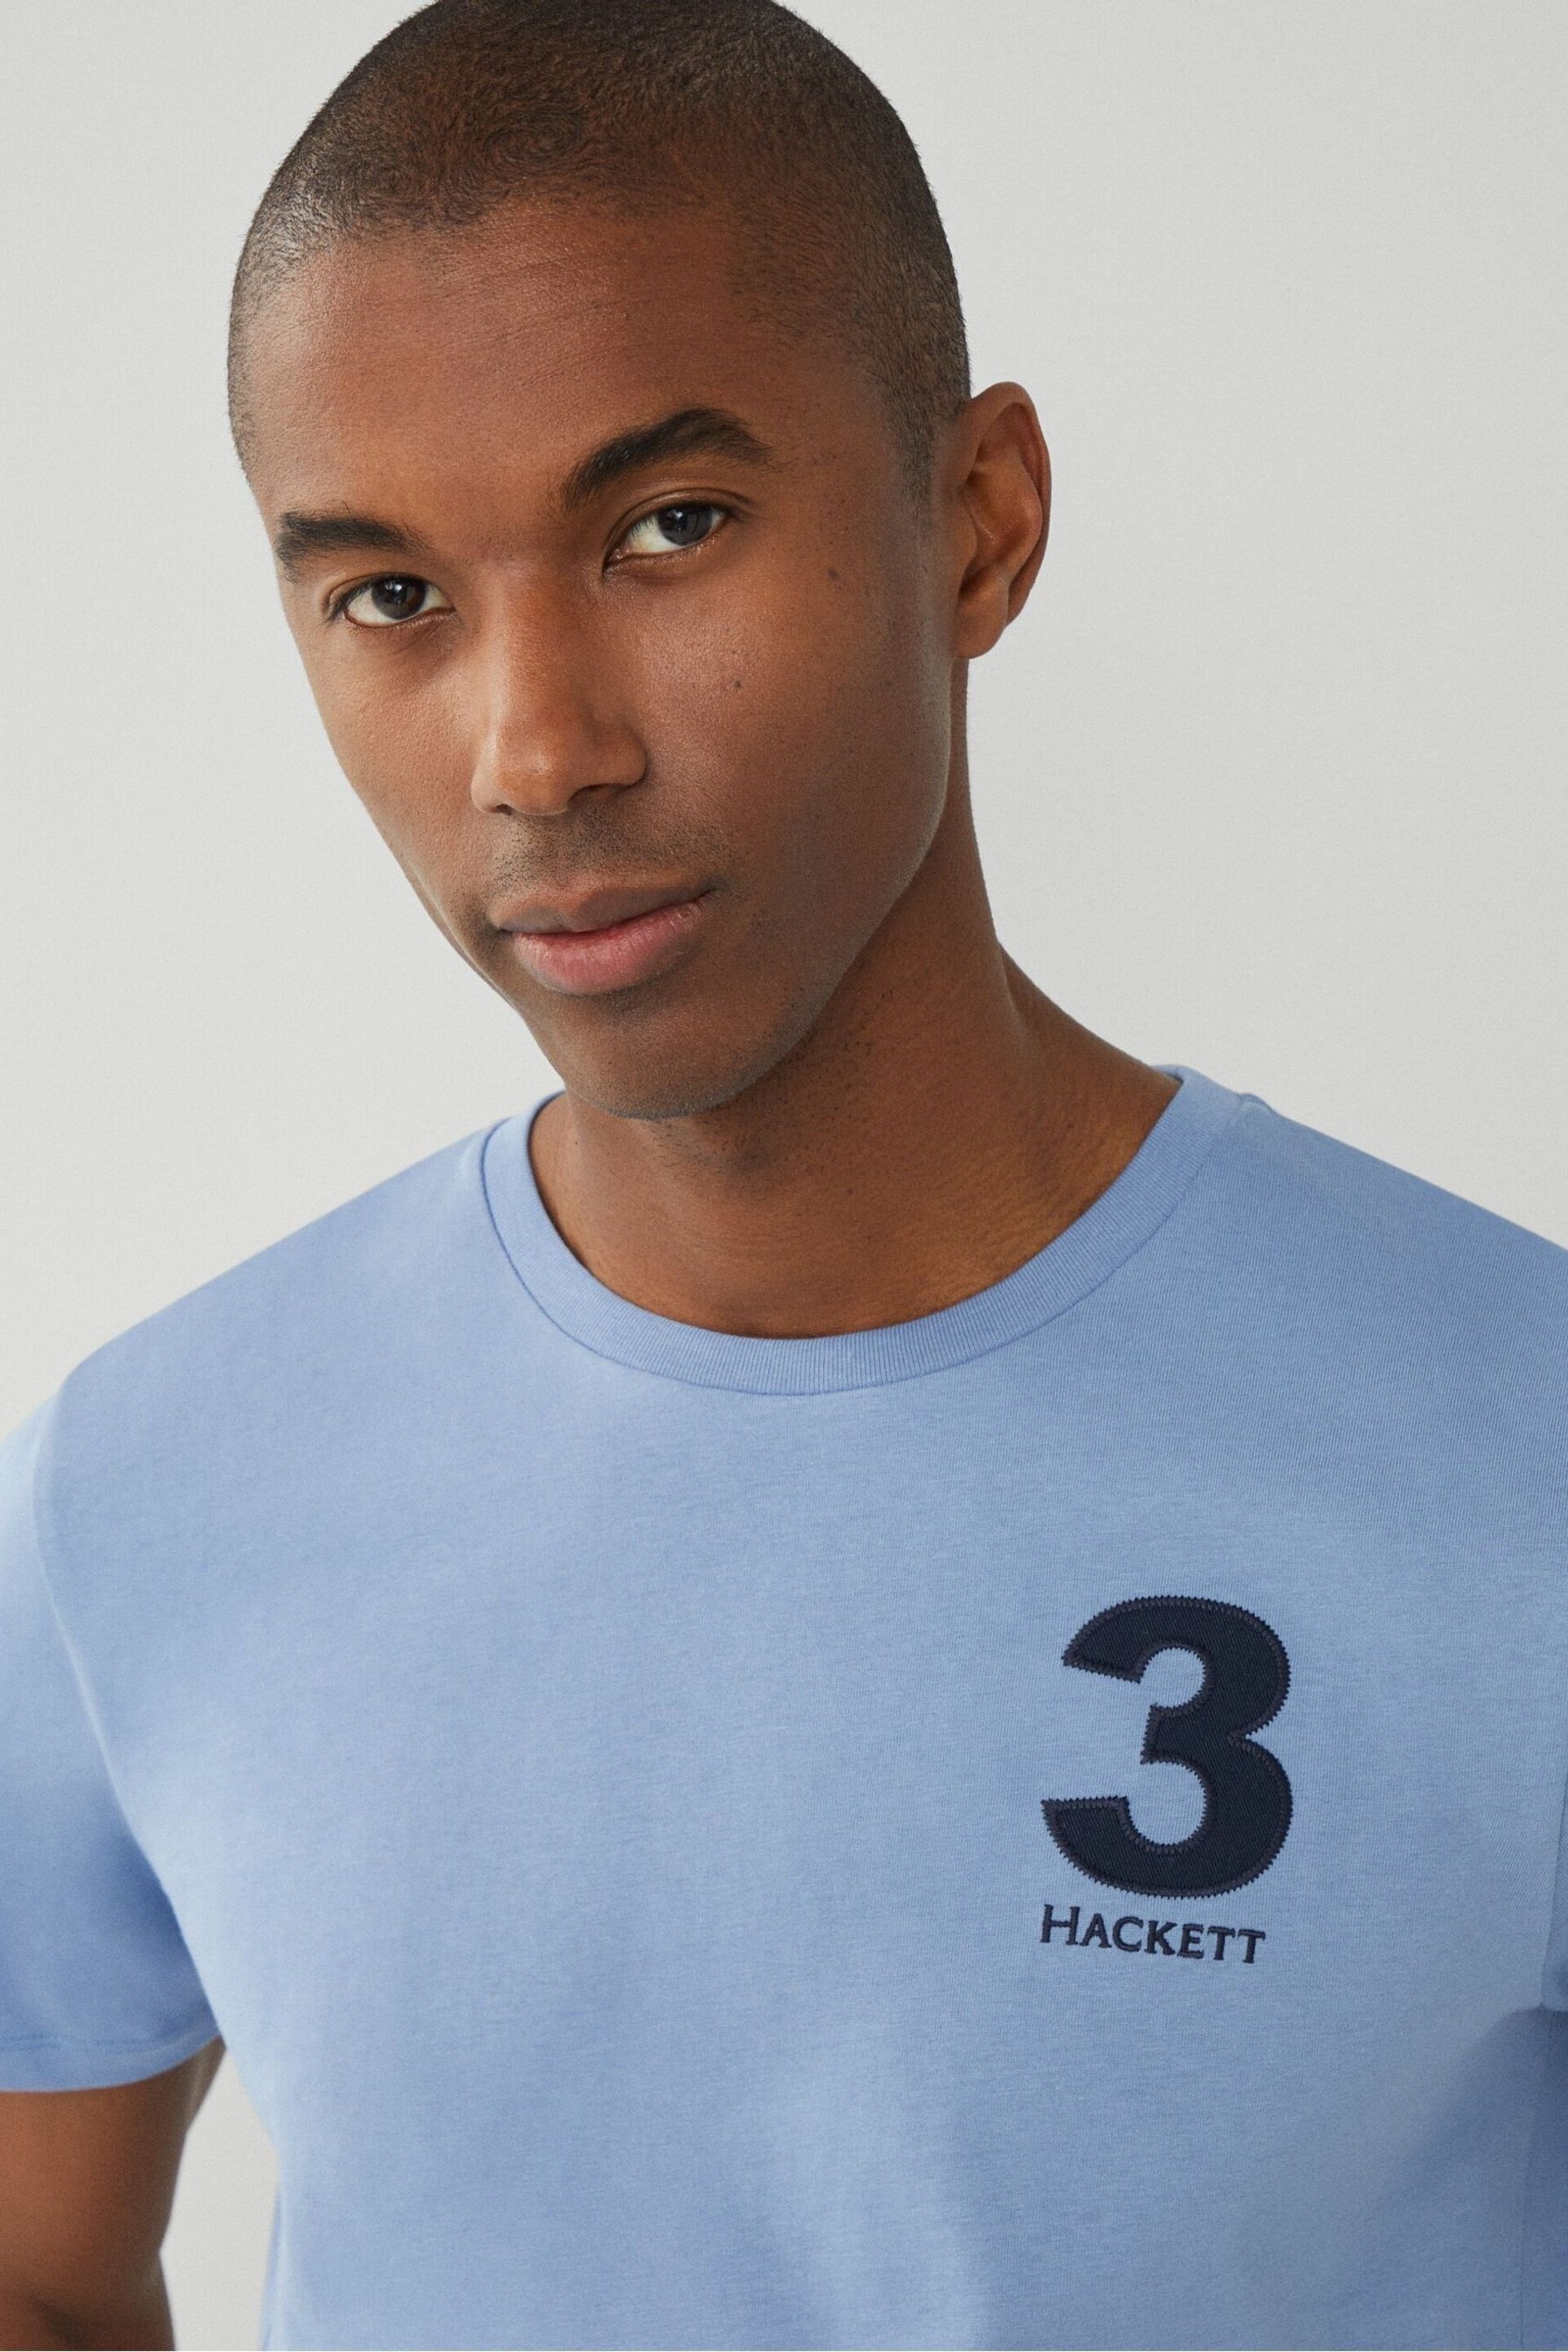 Hackett London Men Blue Short Sleeve T-Shirt - Image 1 of 4